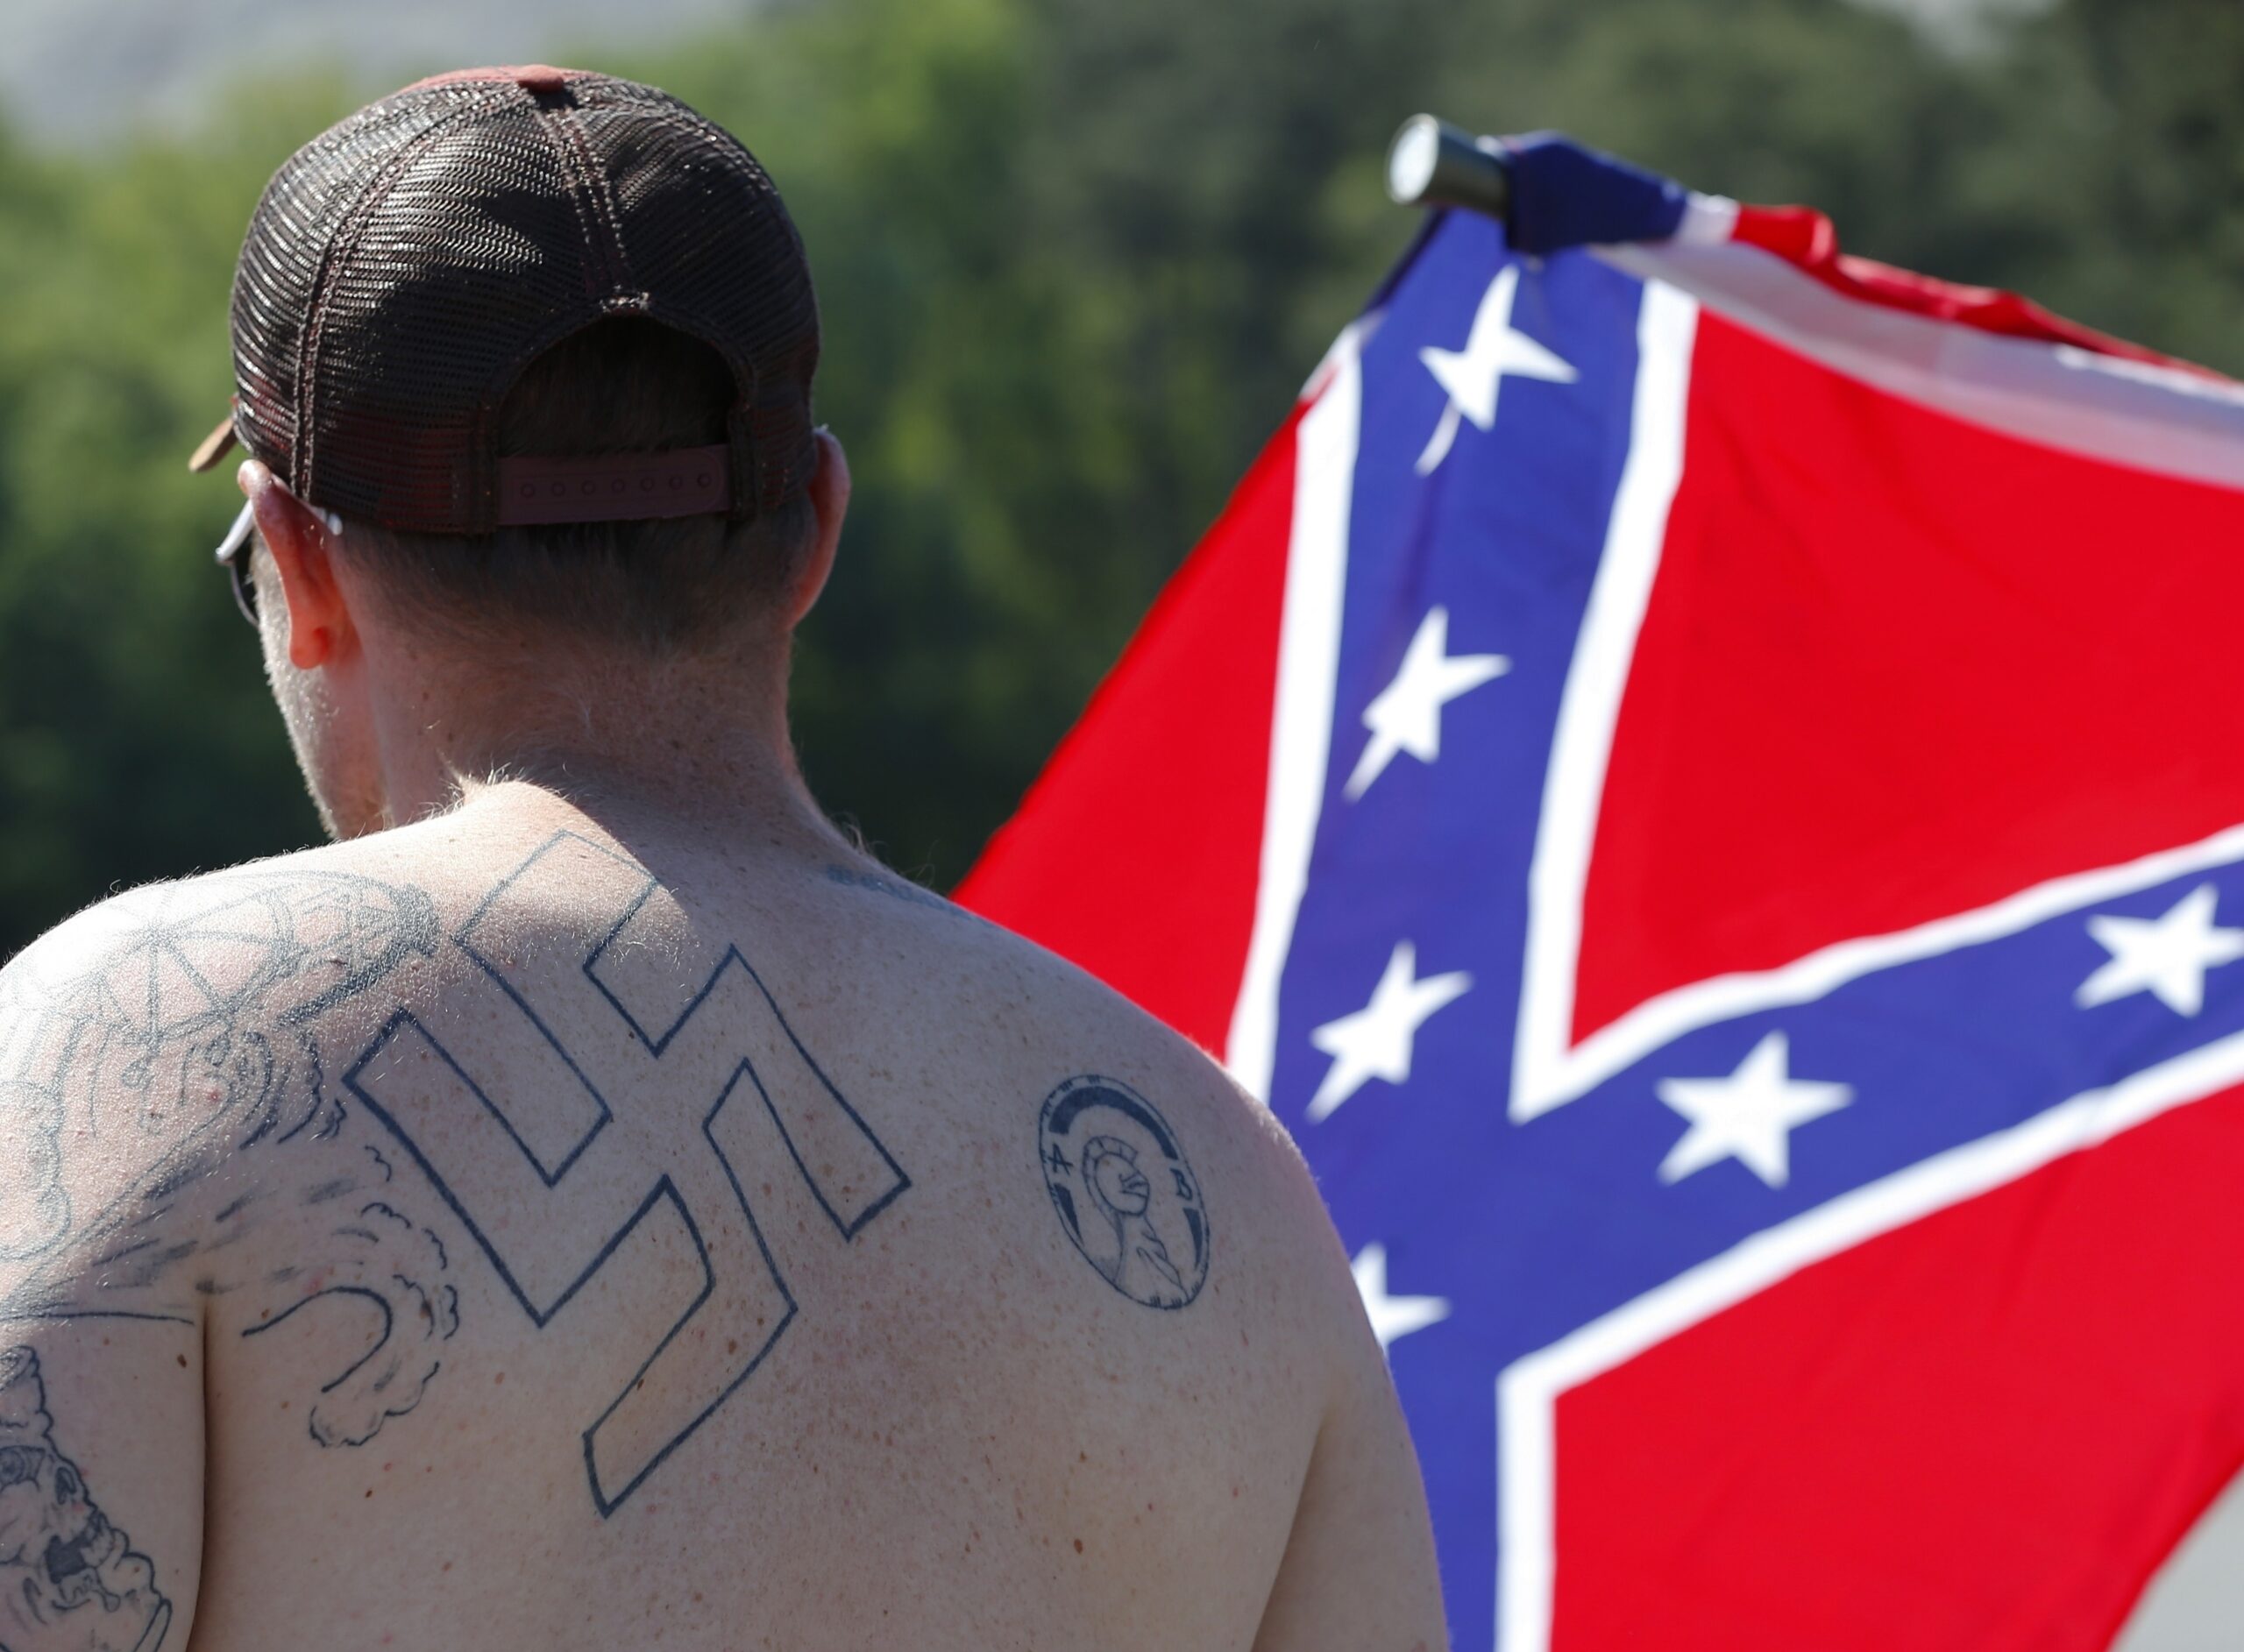 Nazi, white nationalism, racism, extremism